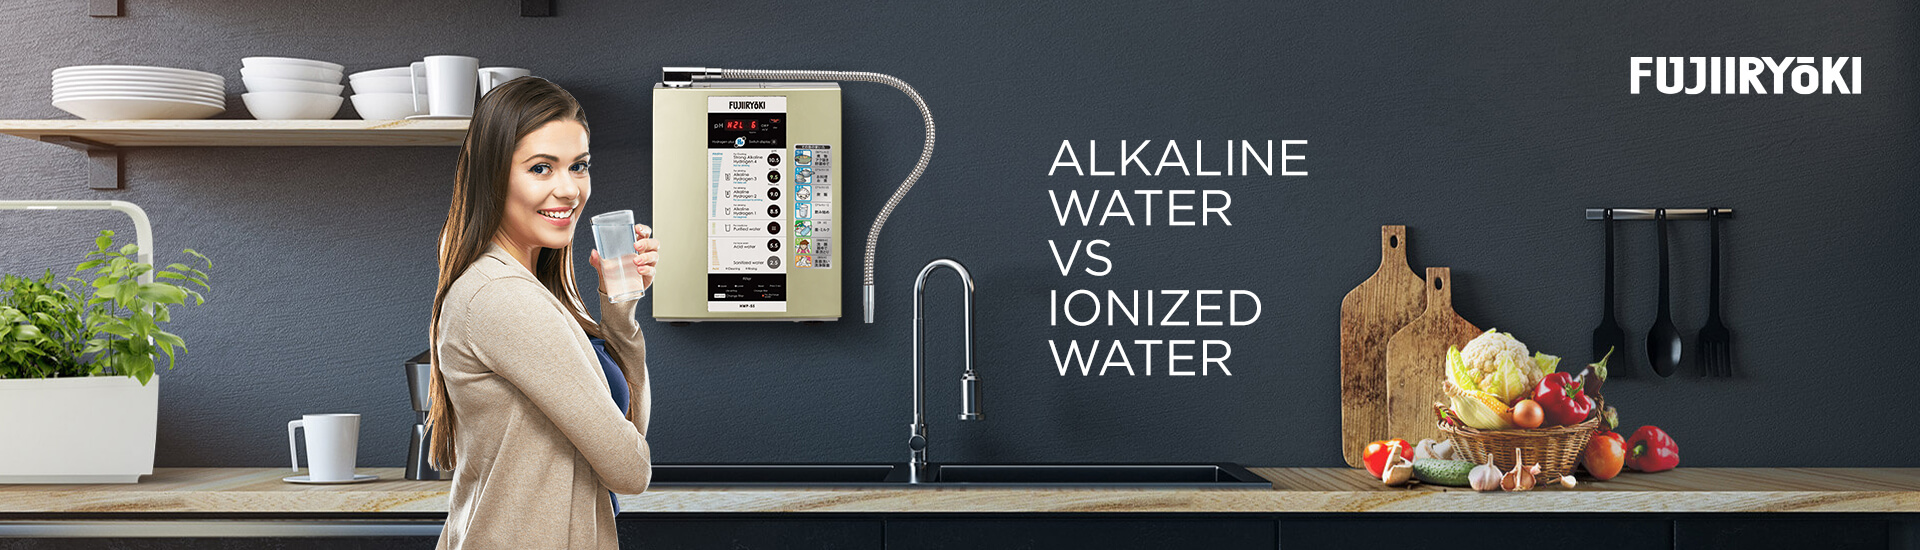 Alkaline Water vs Ionized Water